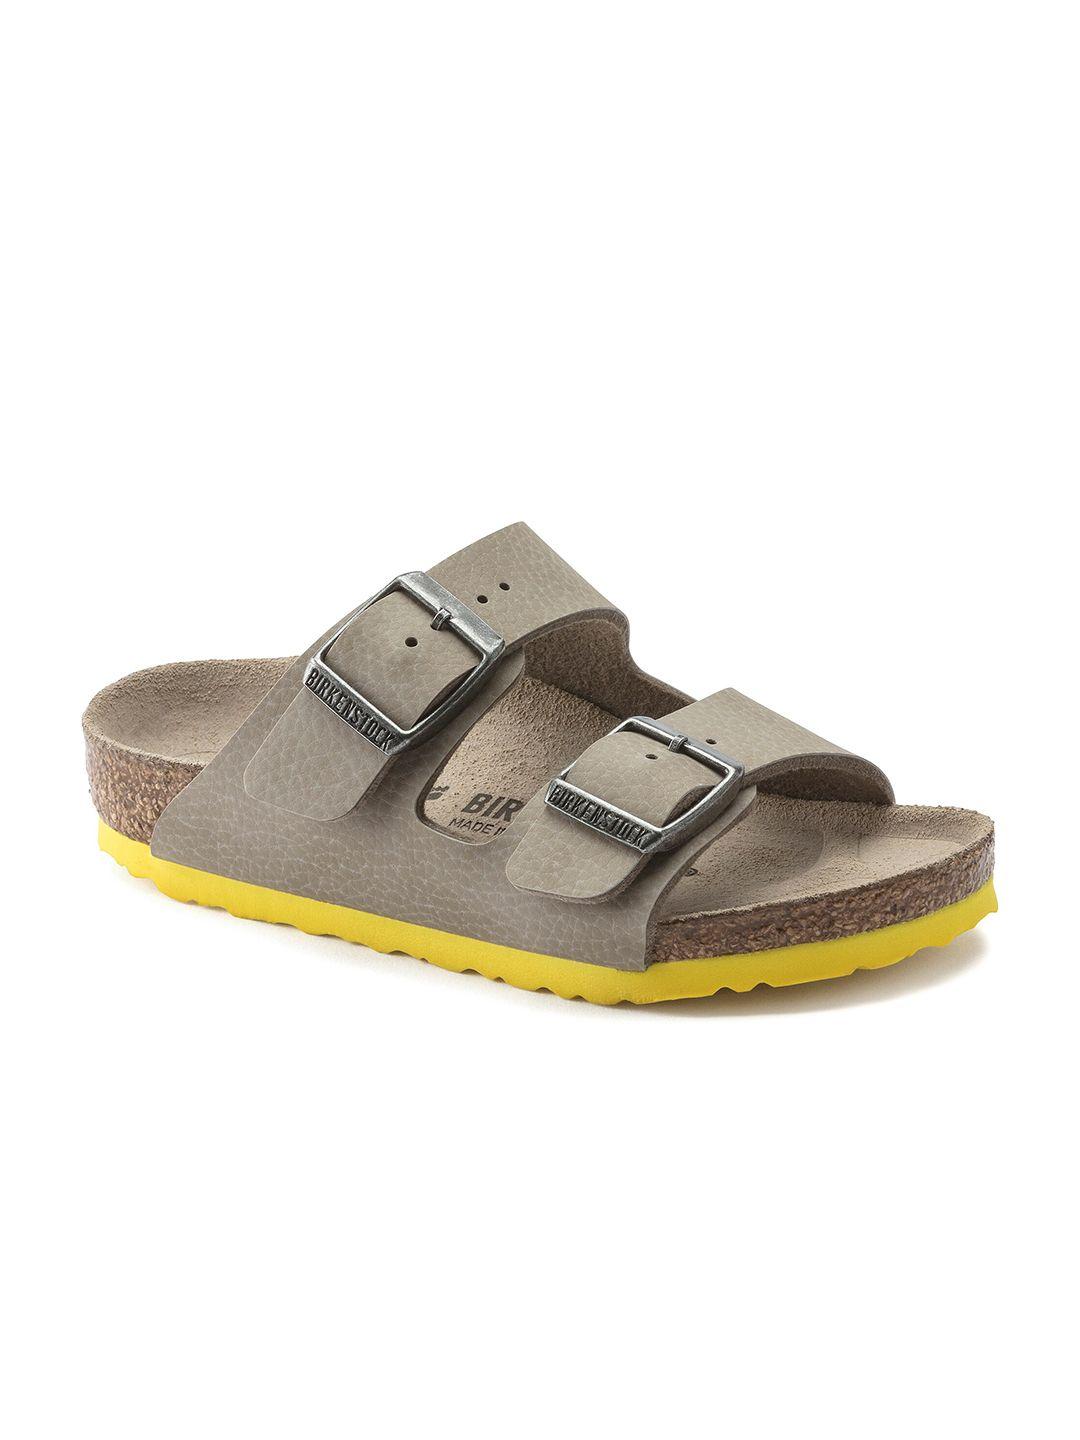 birkenstock boys arizona kids beige narrow width comfort sandals